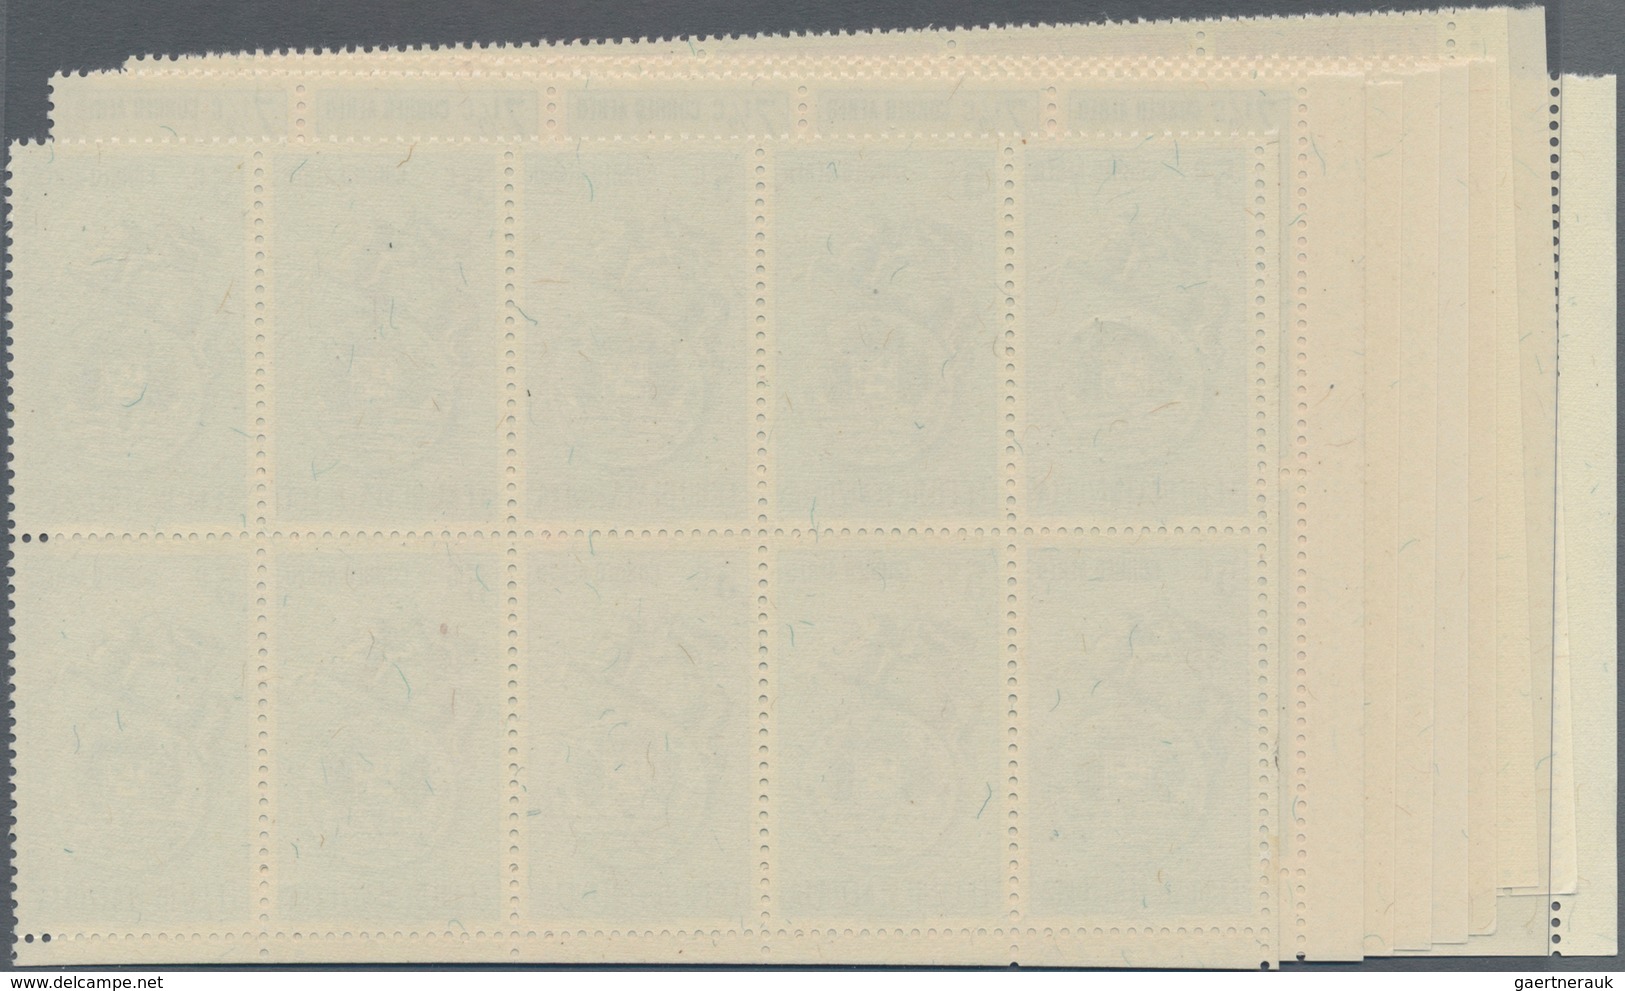 Venezuela: 1951, Coat Of Arms 'VENEZUELA ' Airmail Stamps Complete Set Of Nine In Blocks Of Ten From - Venezuela